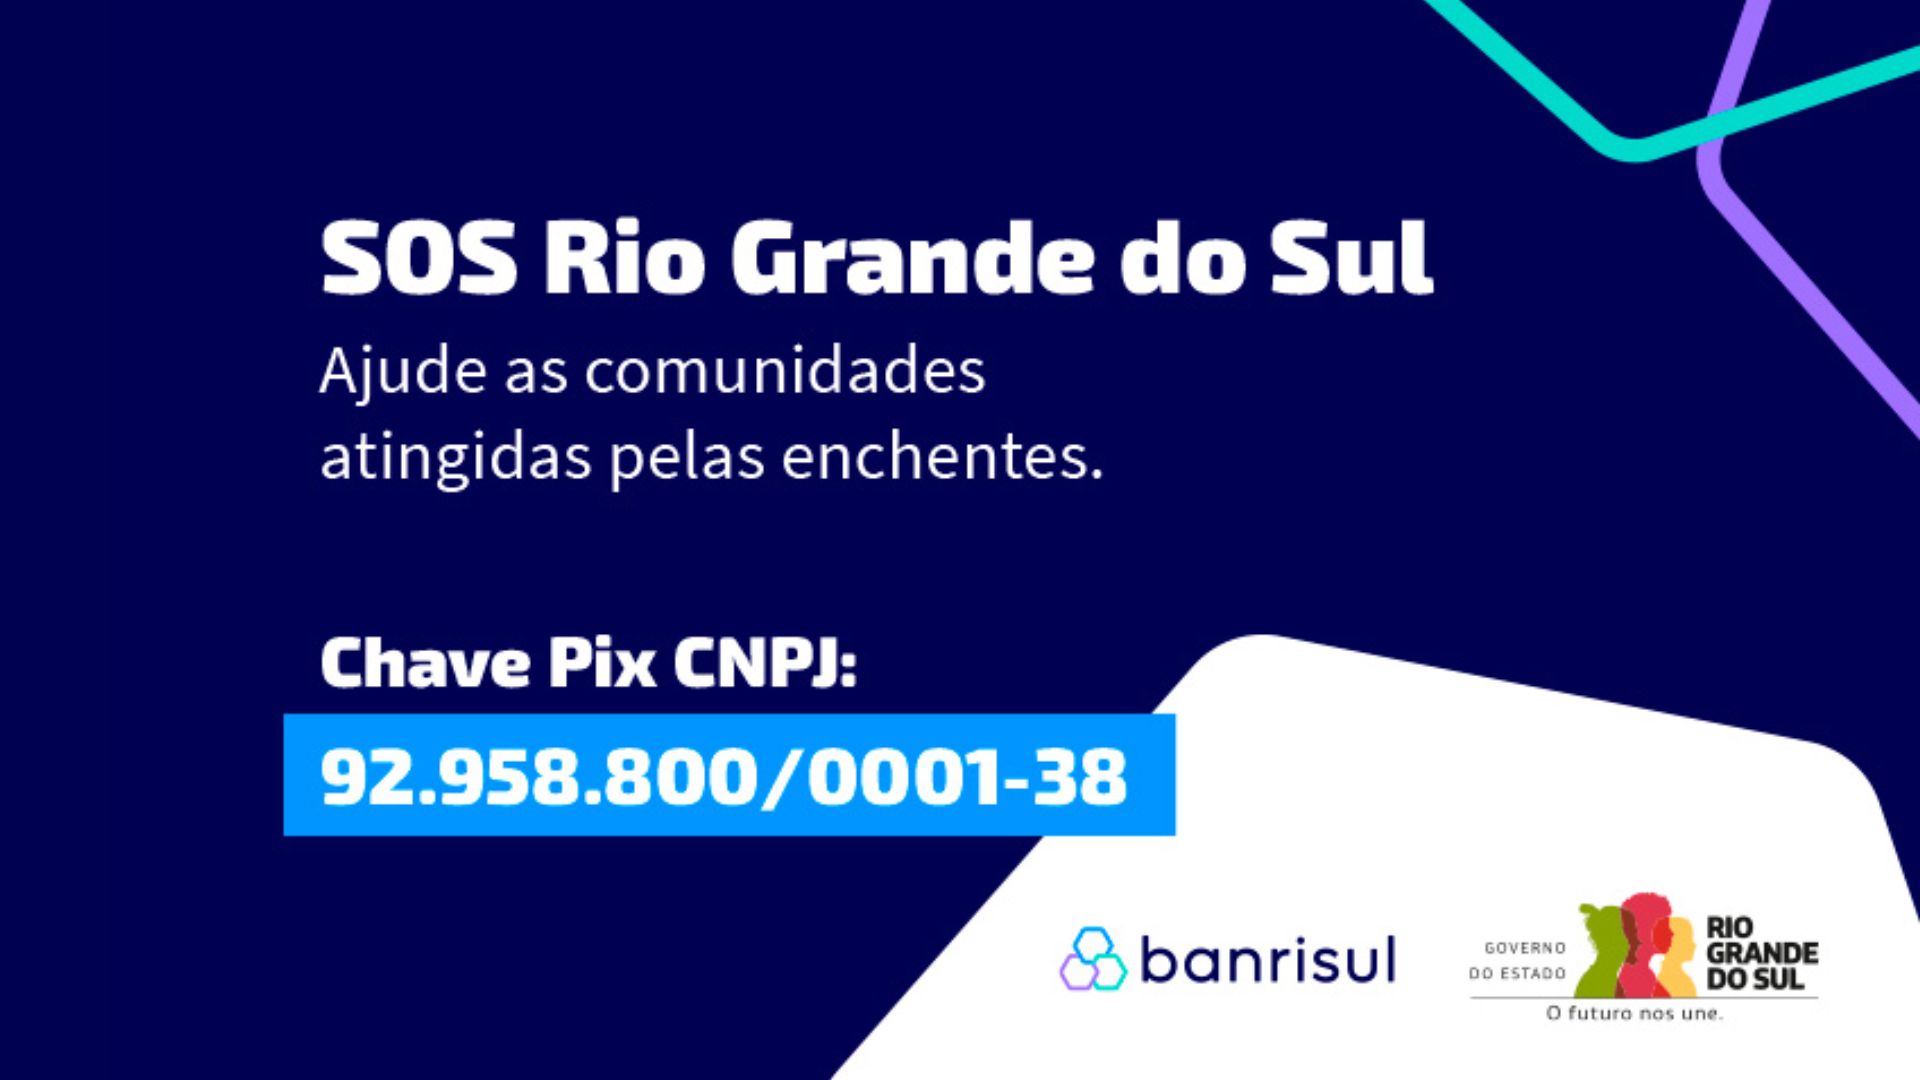 SOS Rio Grande do Sul: Saiba como ajudar